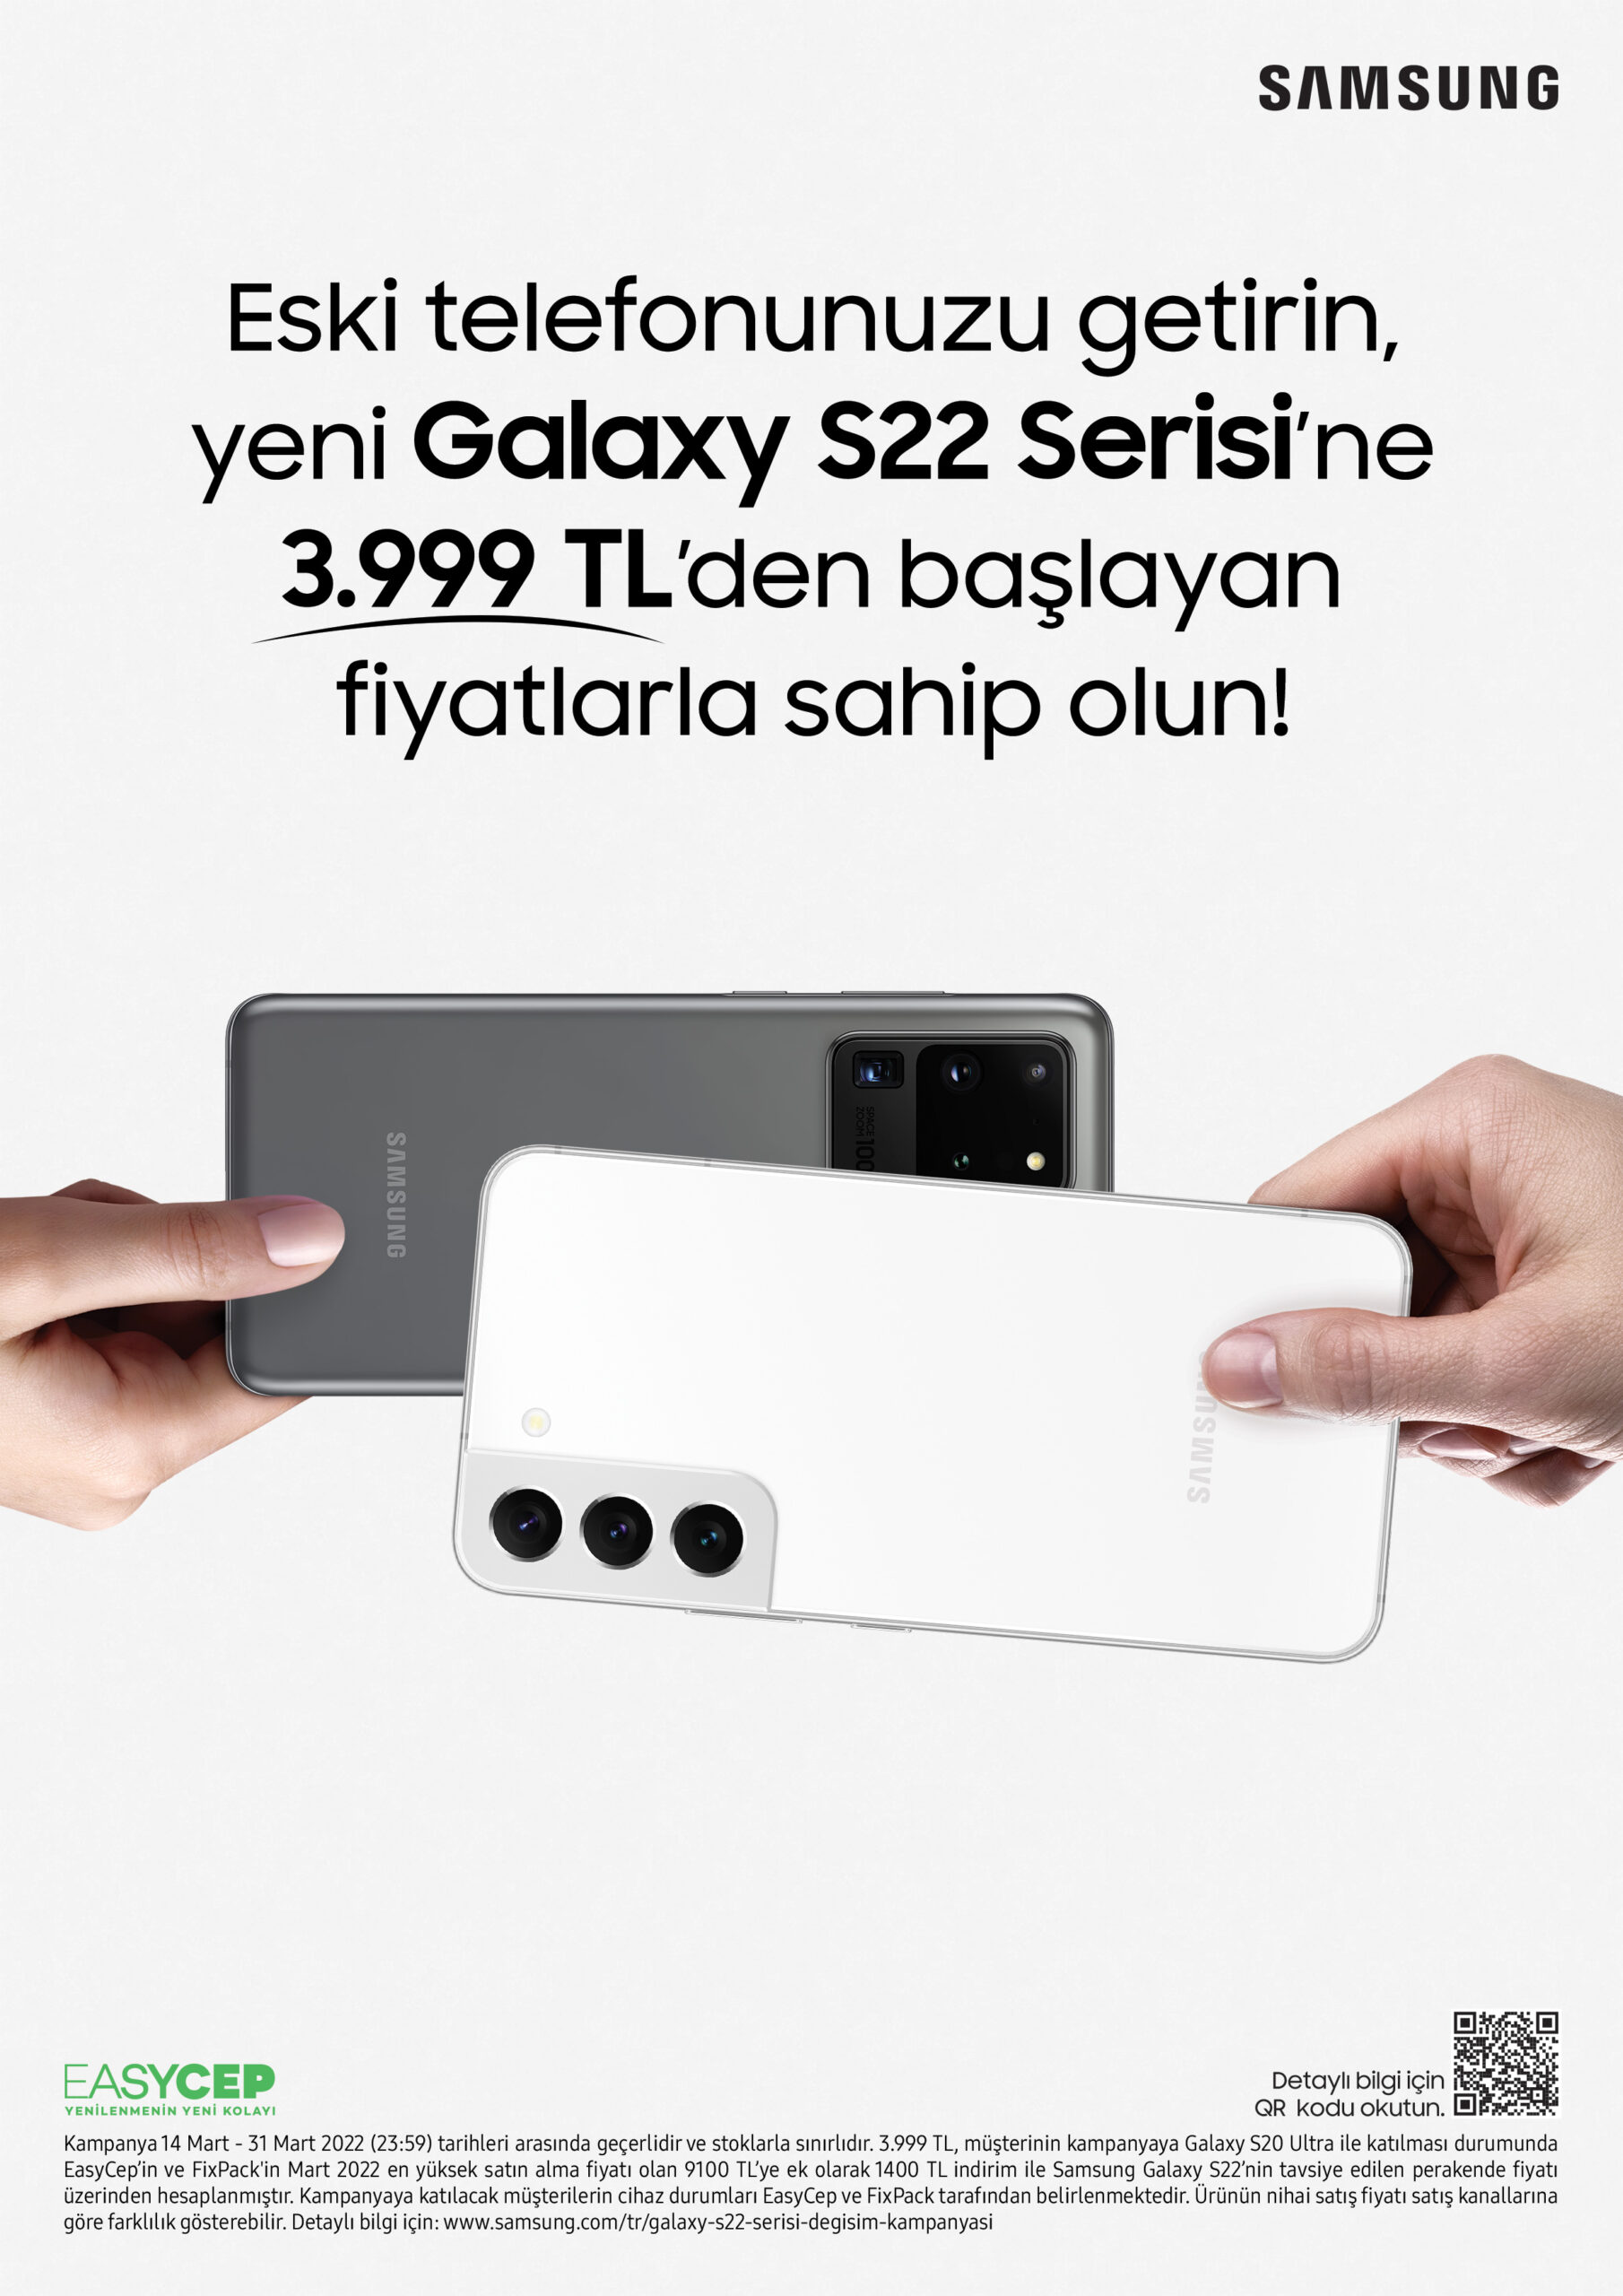 Eski telefonunuzu getirin, yeni Galaxy S22 serisine 3999 TL’den başlayan fiyatlarla sahip olun!